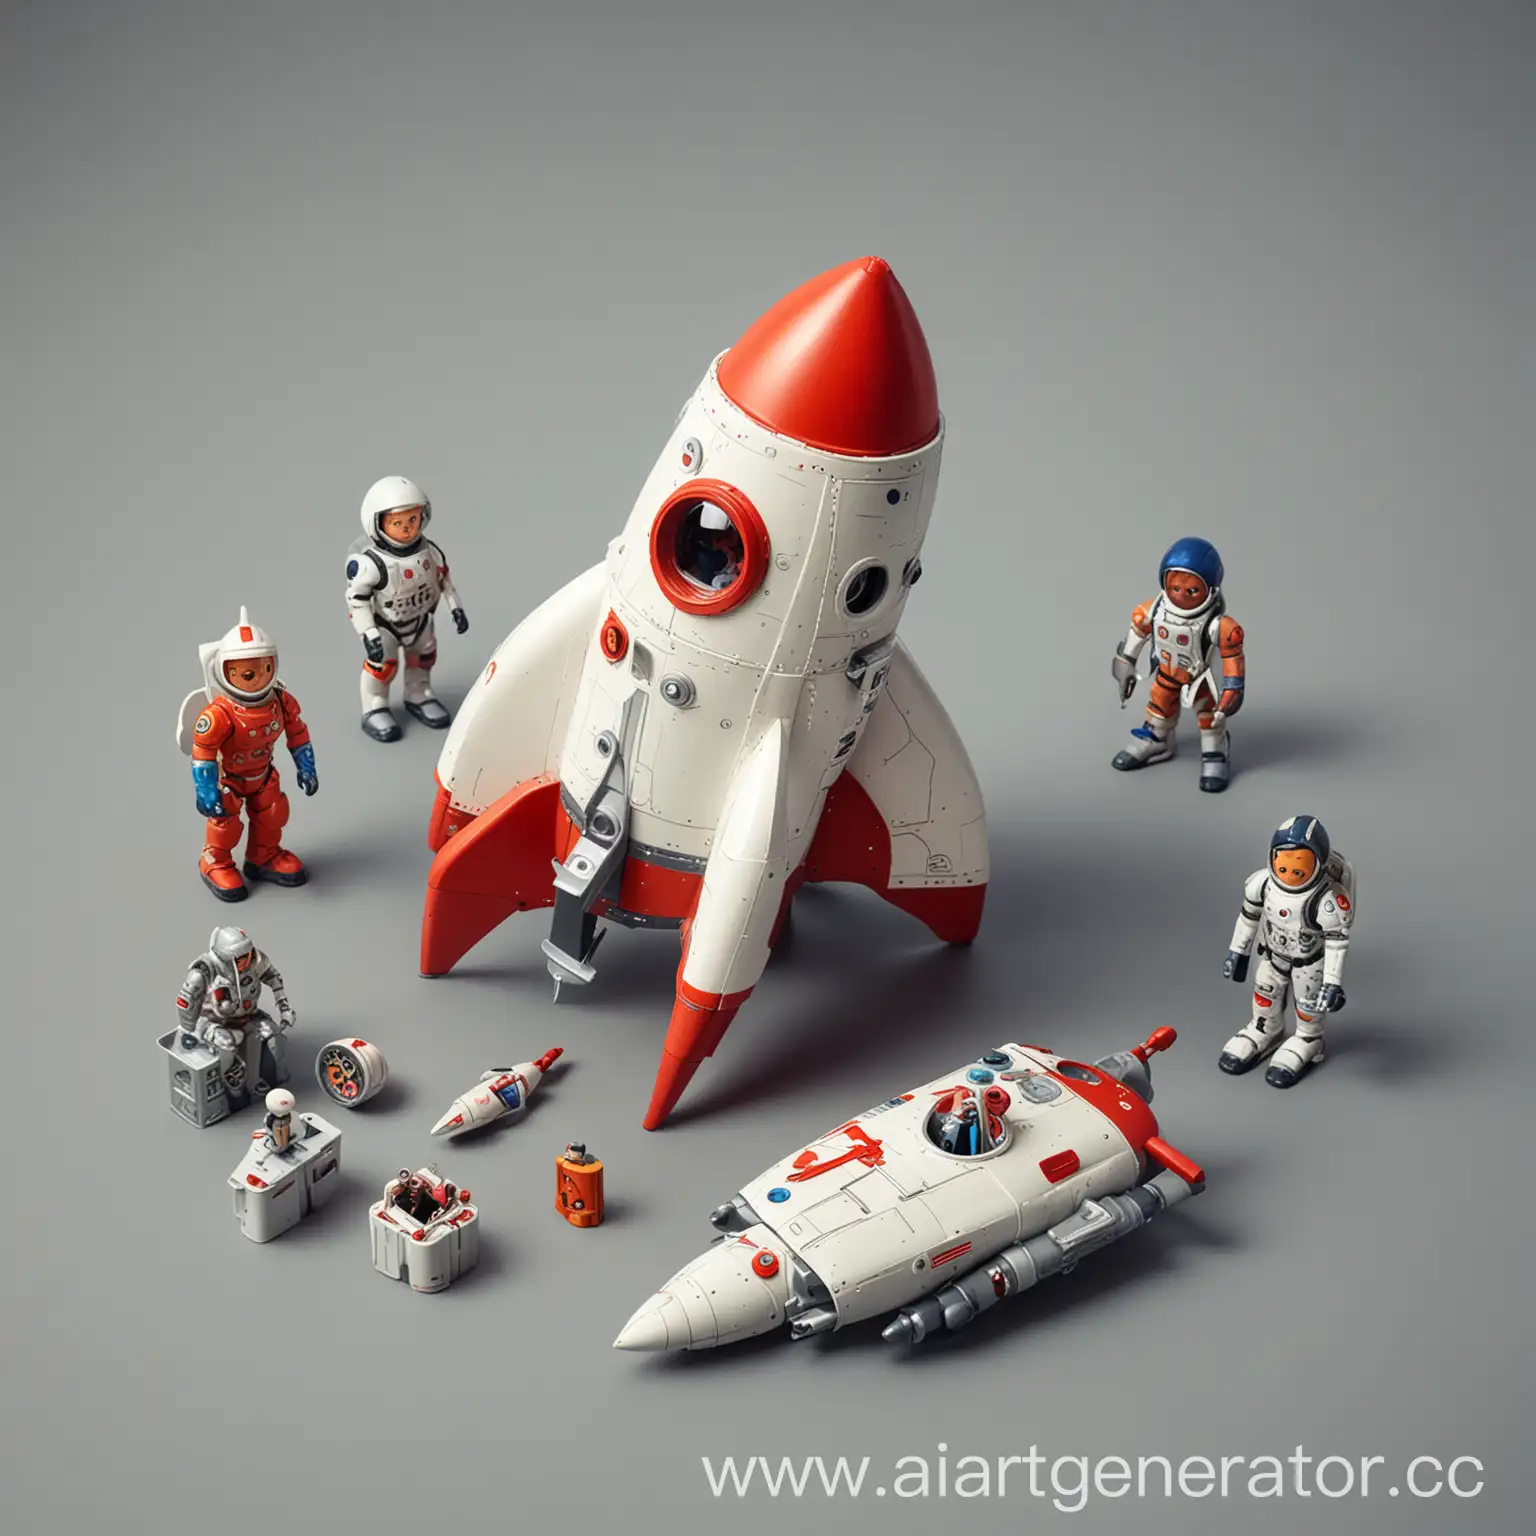 дизайн, игрушка для детей, системный подход, набор игрушек, космическая ракета, ролевая игра